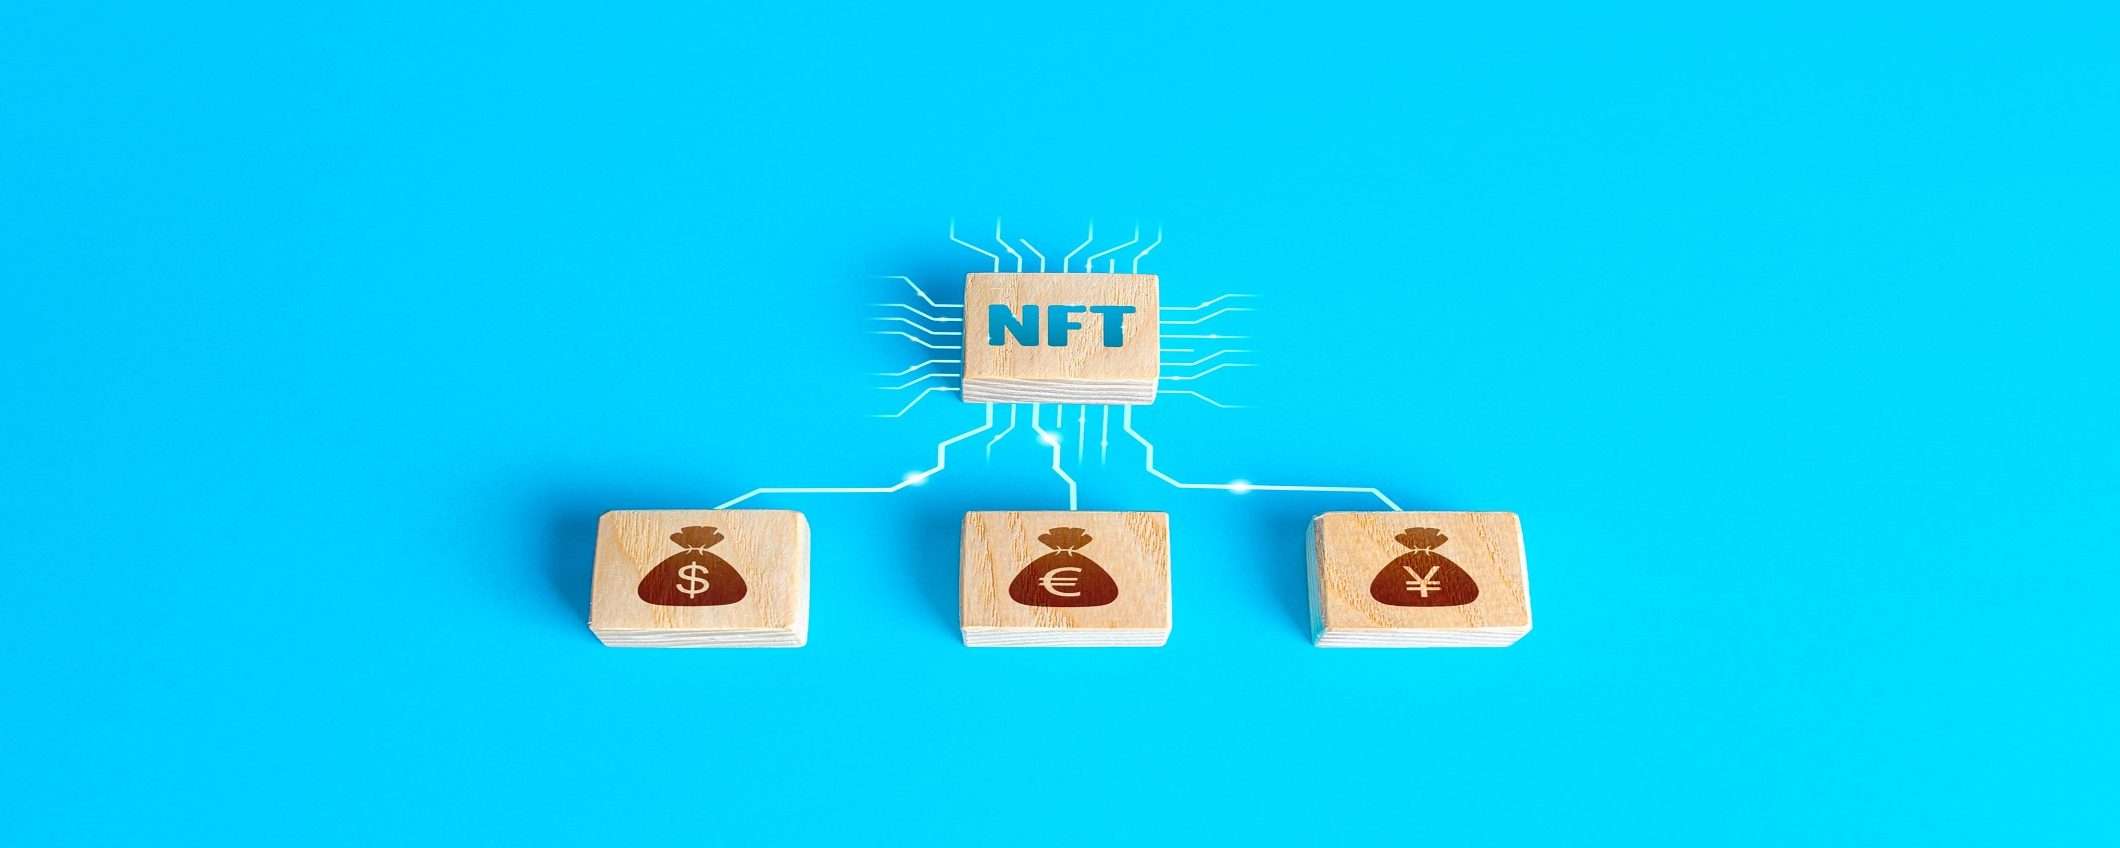 Come e dove vendere NFT: siti, costi e possibili guadagni